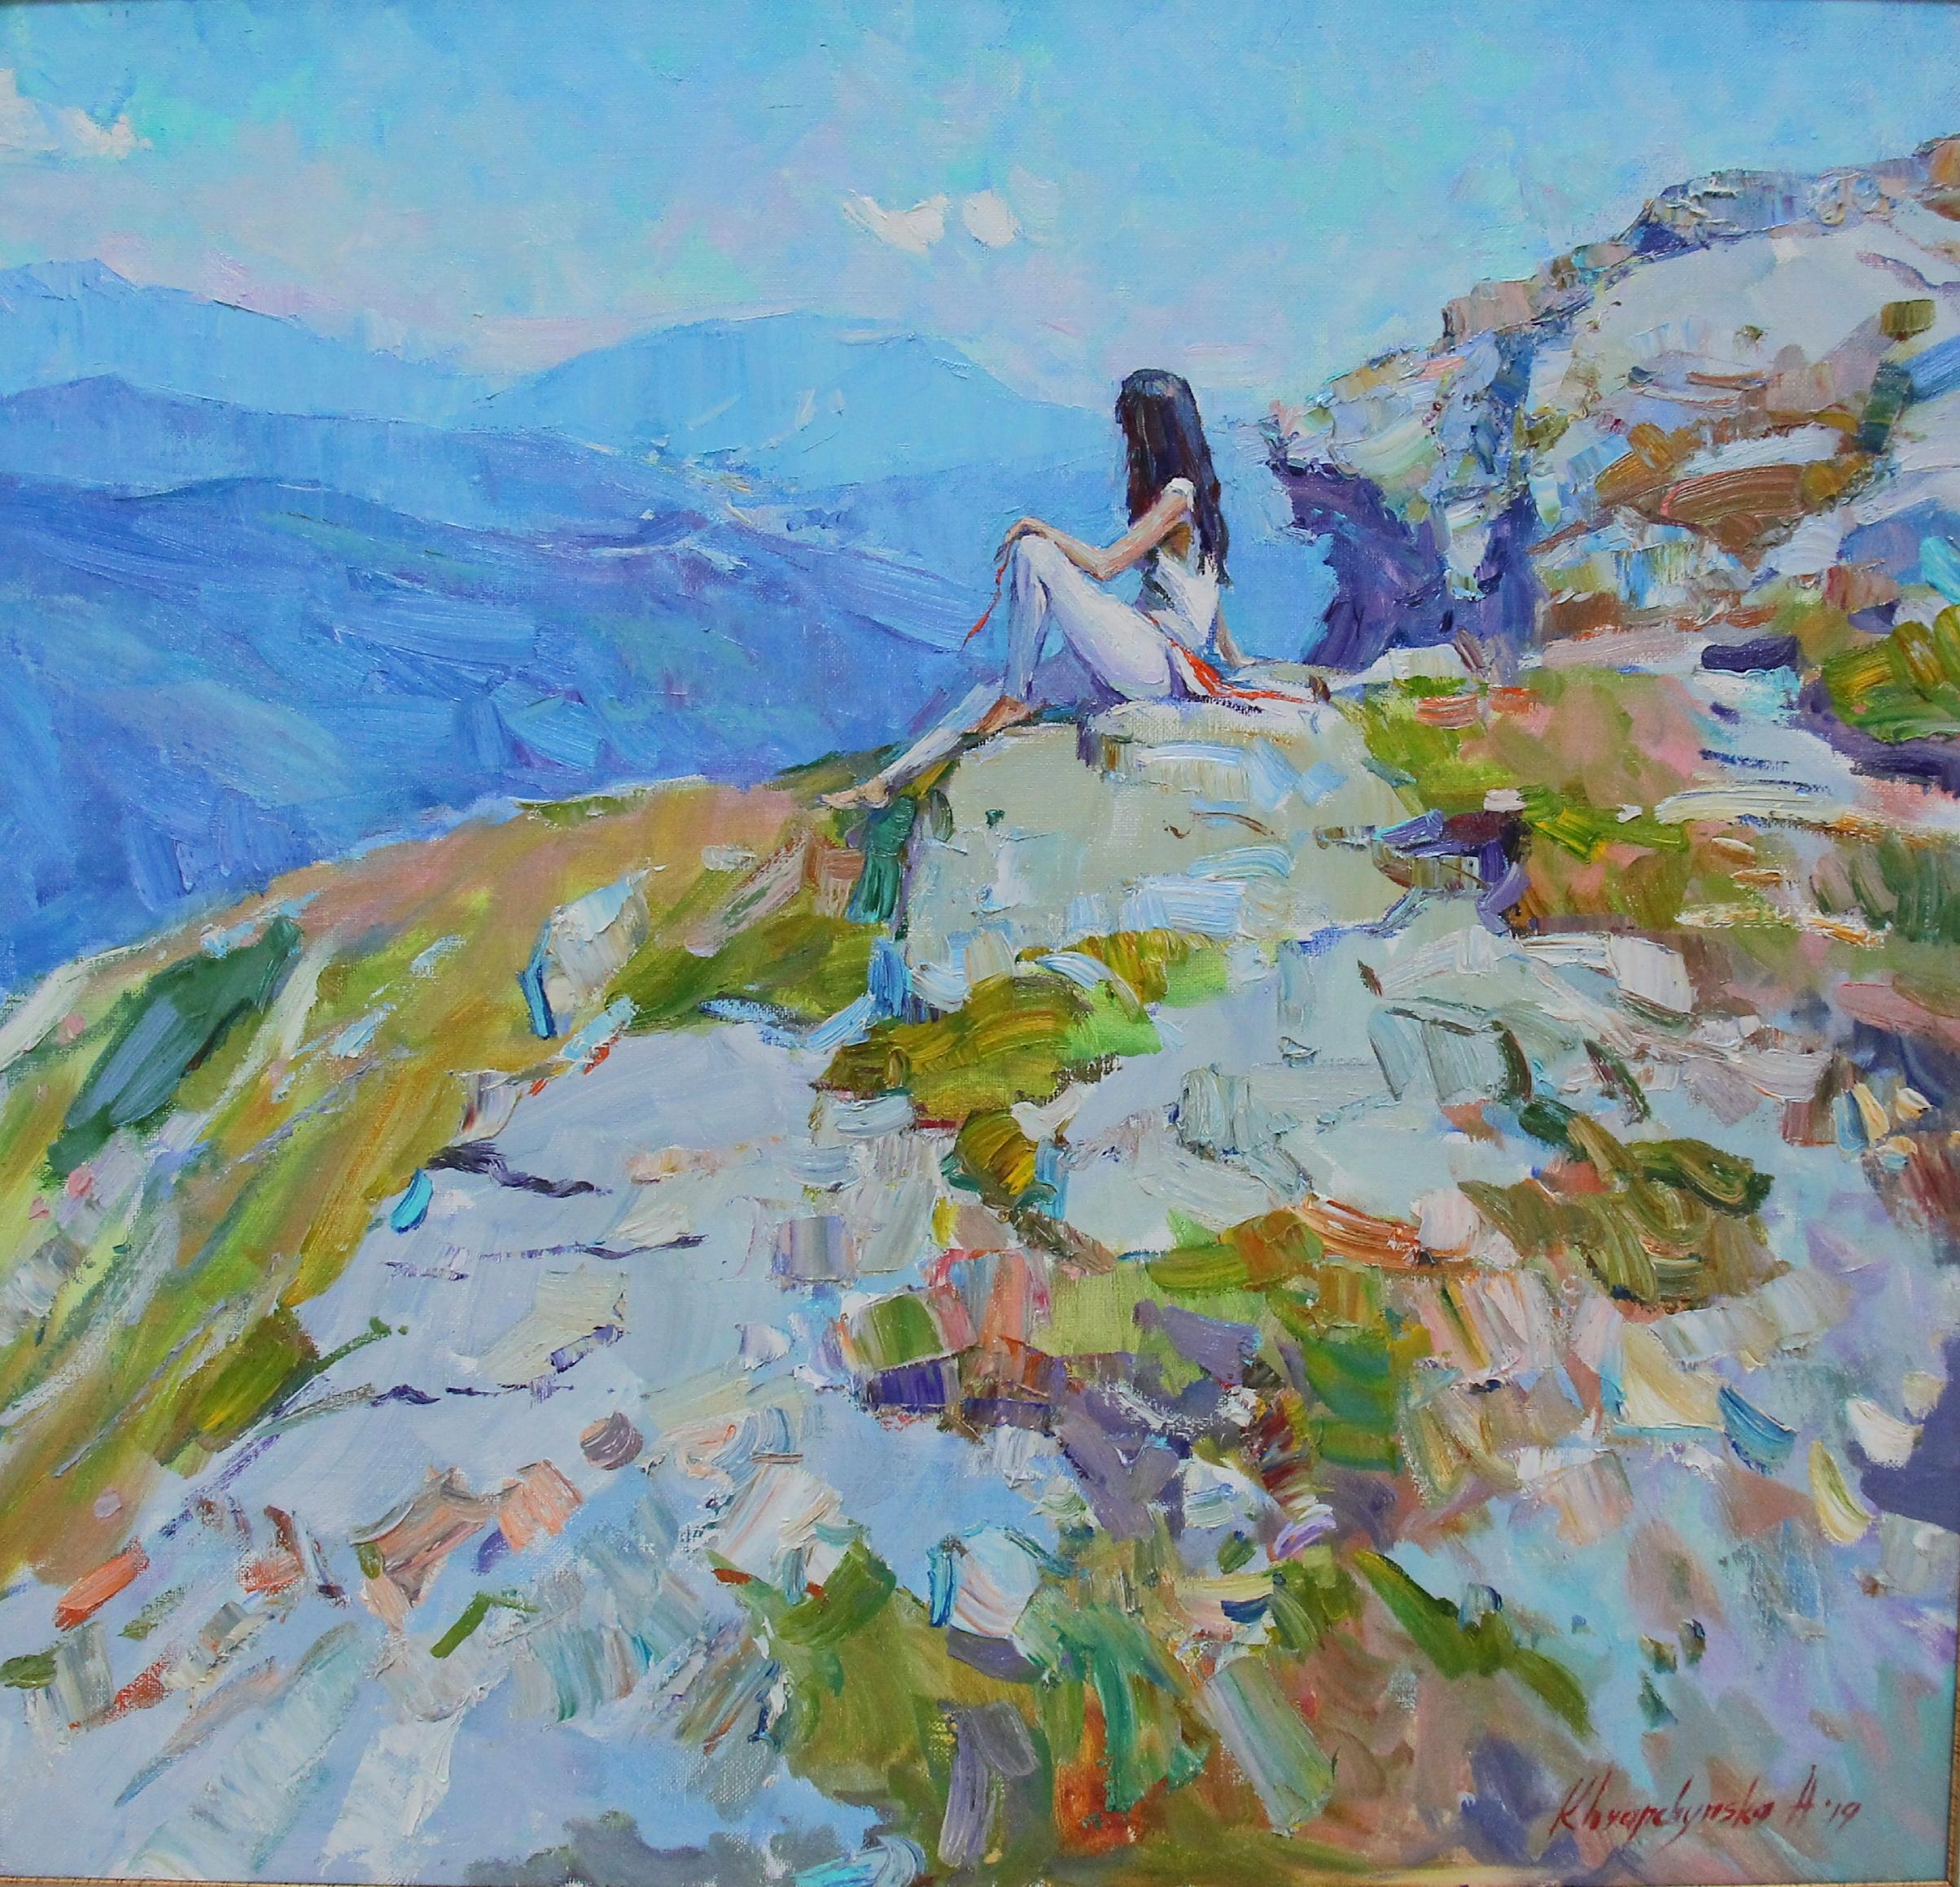 Edelweiss  Landschaft, lgemlde in den Farben Blau, Grn, Wei, Grau und Elfenbein – Painting von Alina Khrapchynska